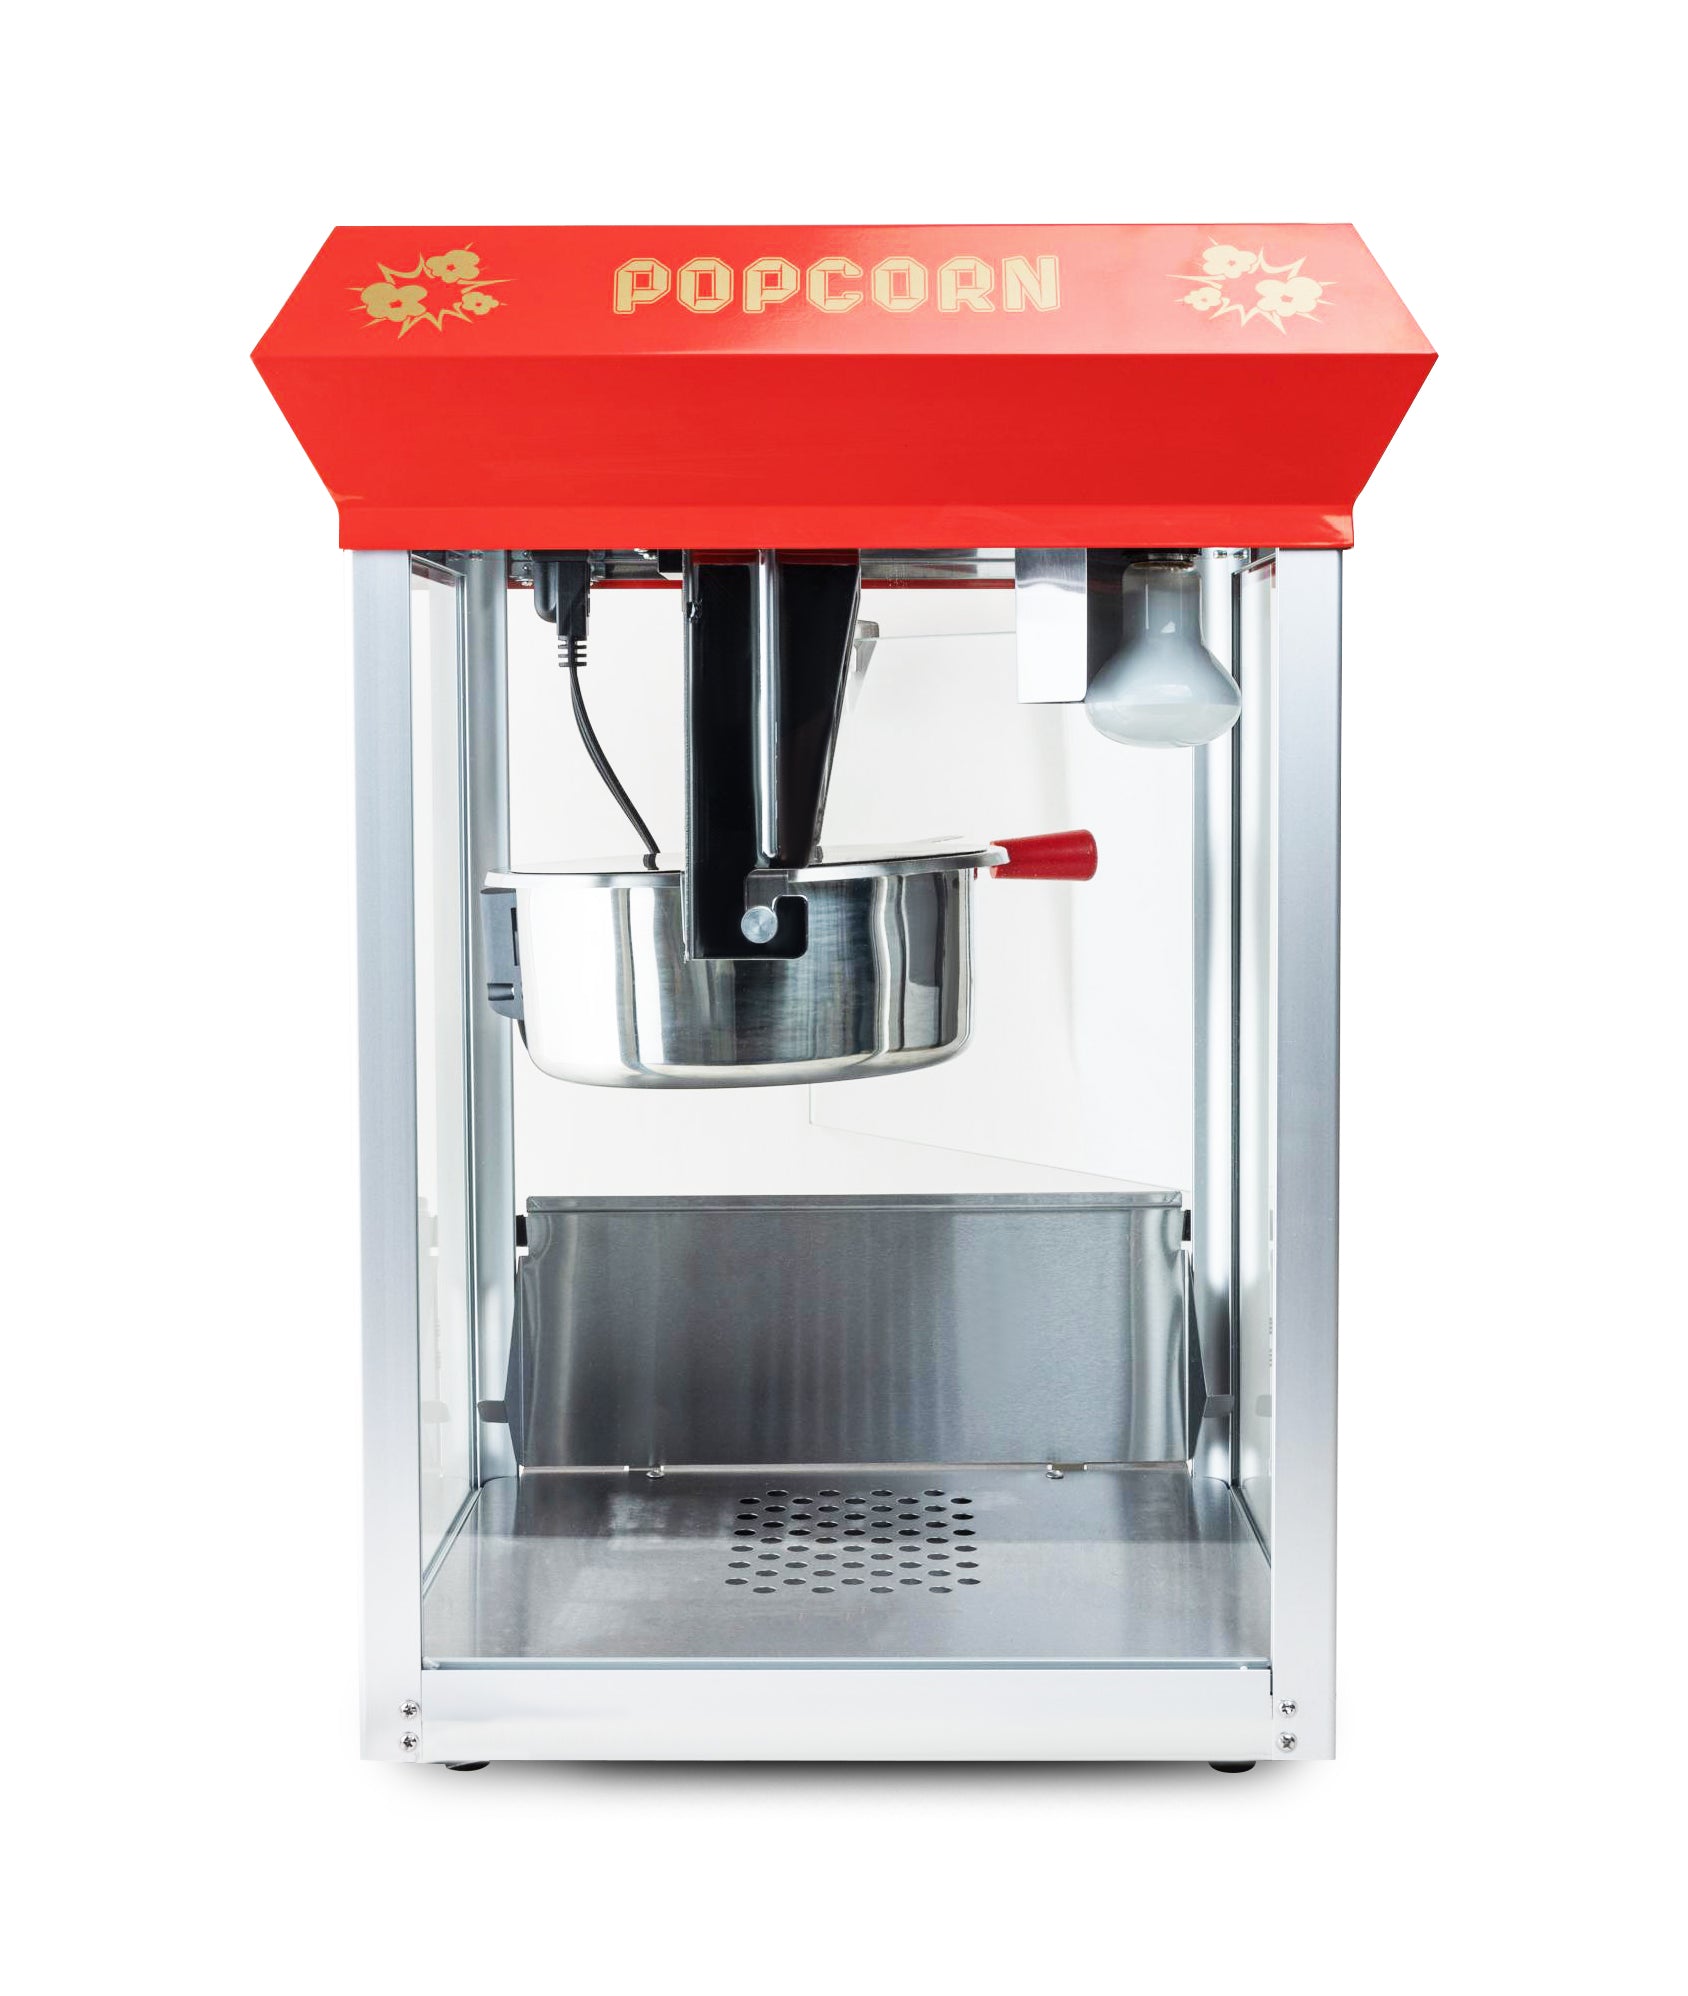 Popcorn Maker Red - 8 oz